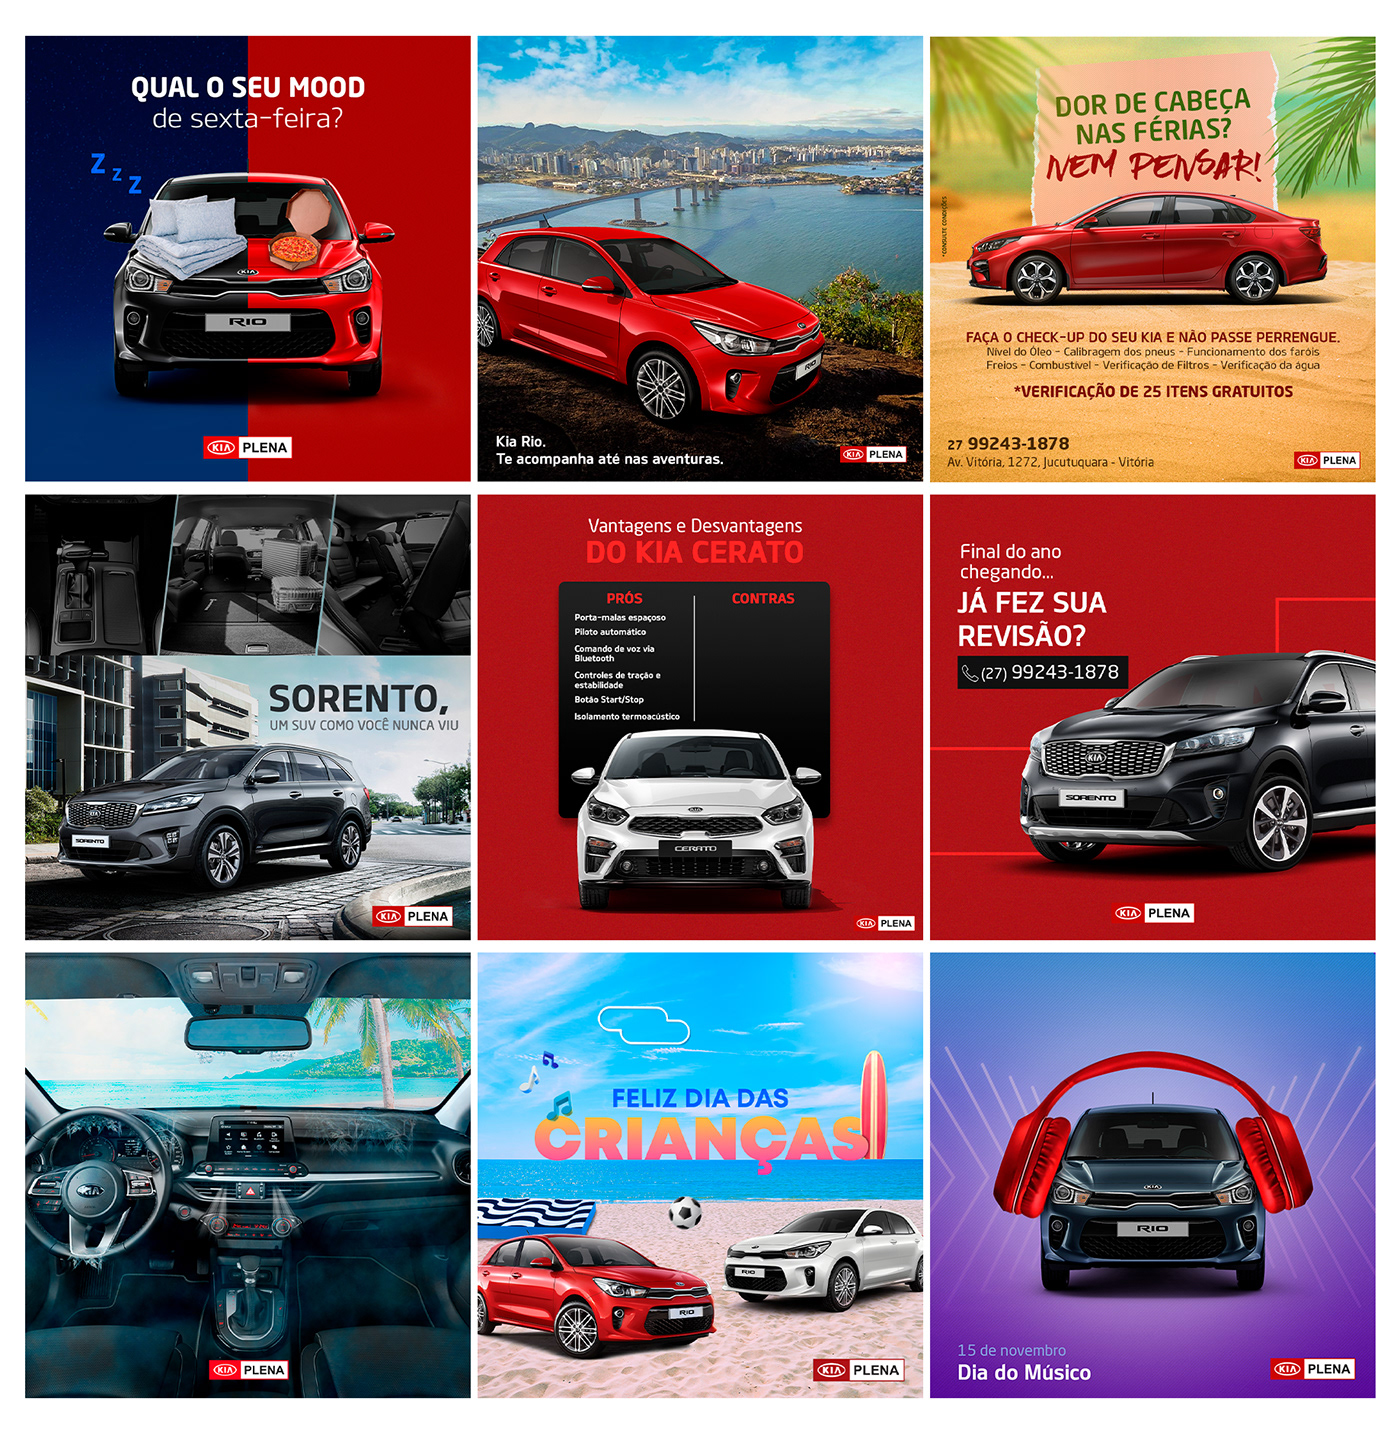 Automóvel carros design kia publicidade social media veículos concessionária design gráfico